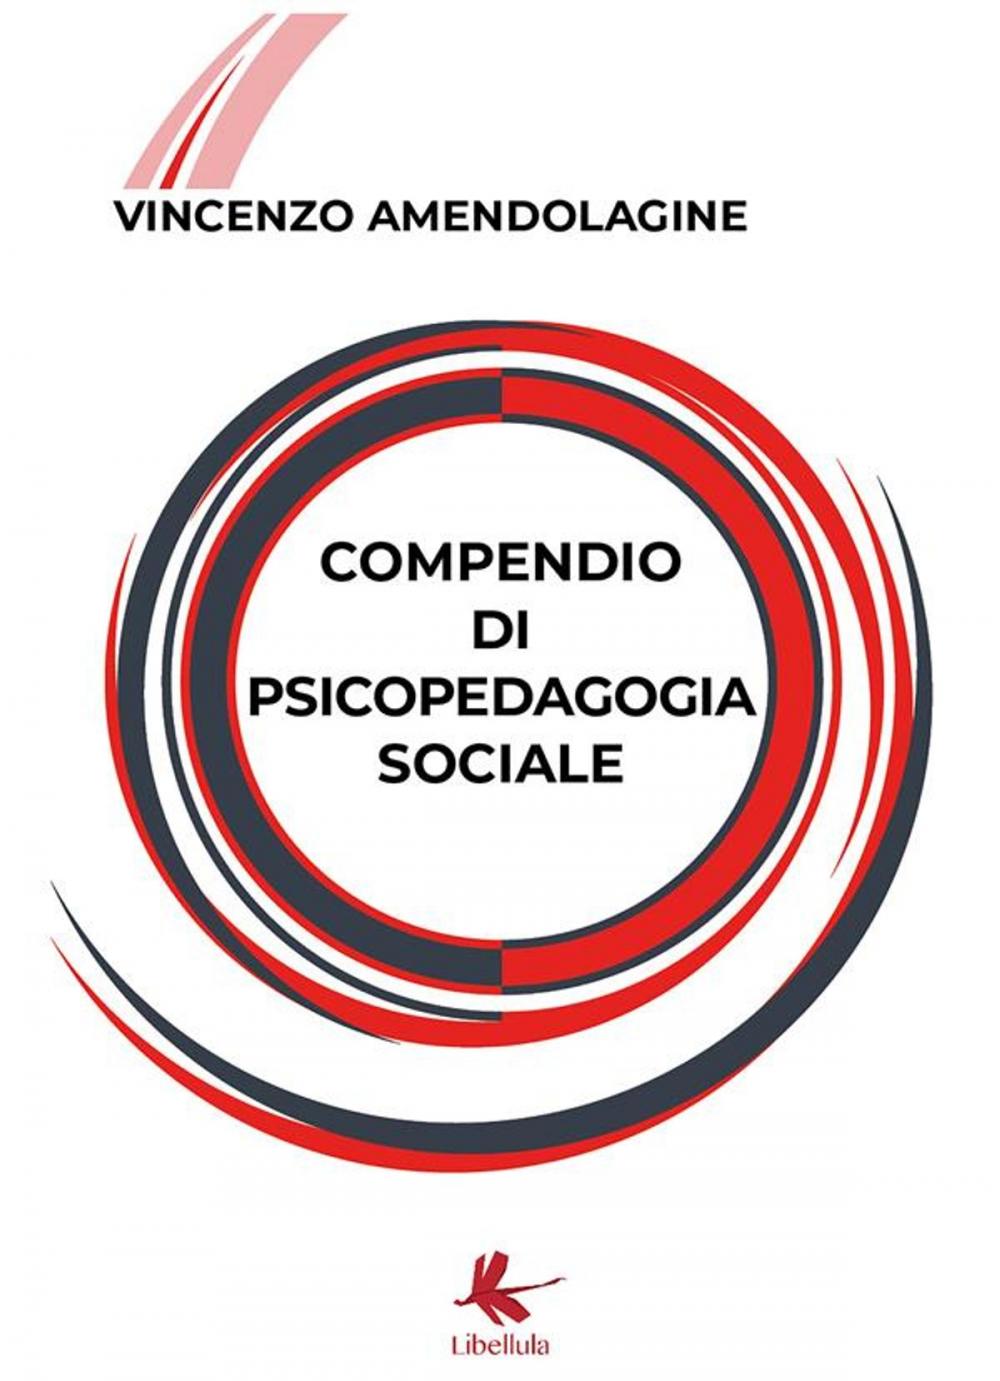 Big bigCover of Compendio di psicopedagogia sociale